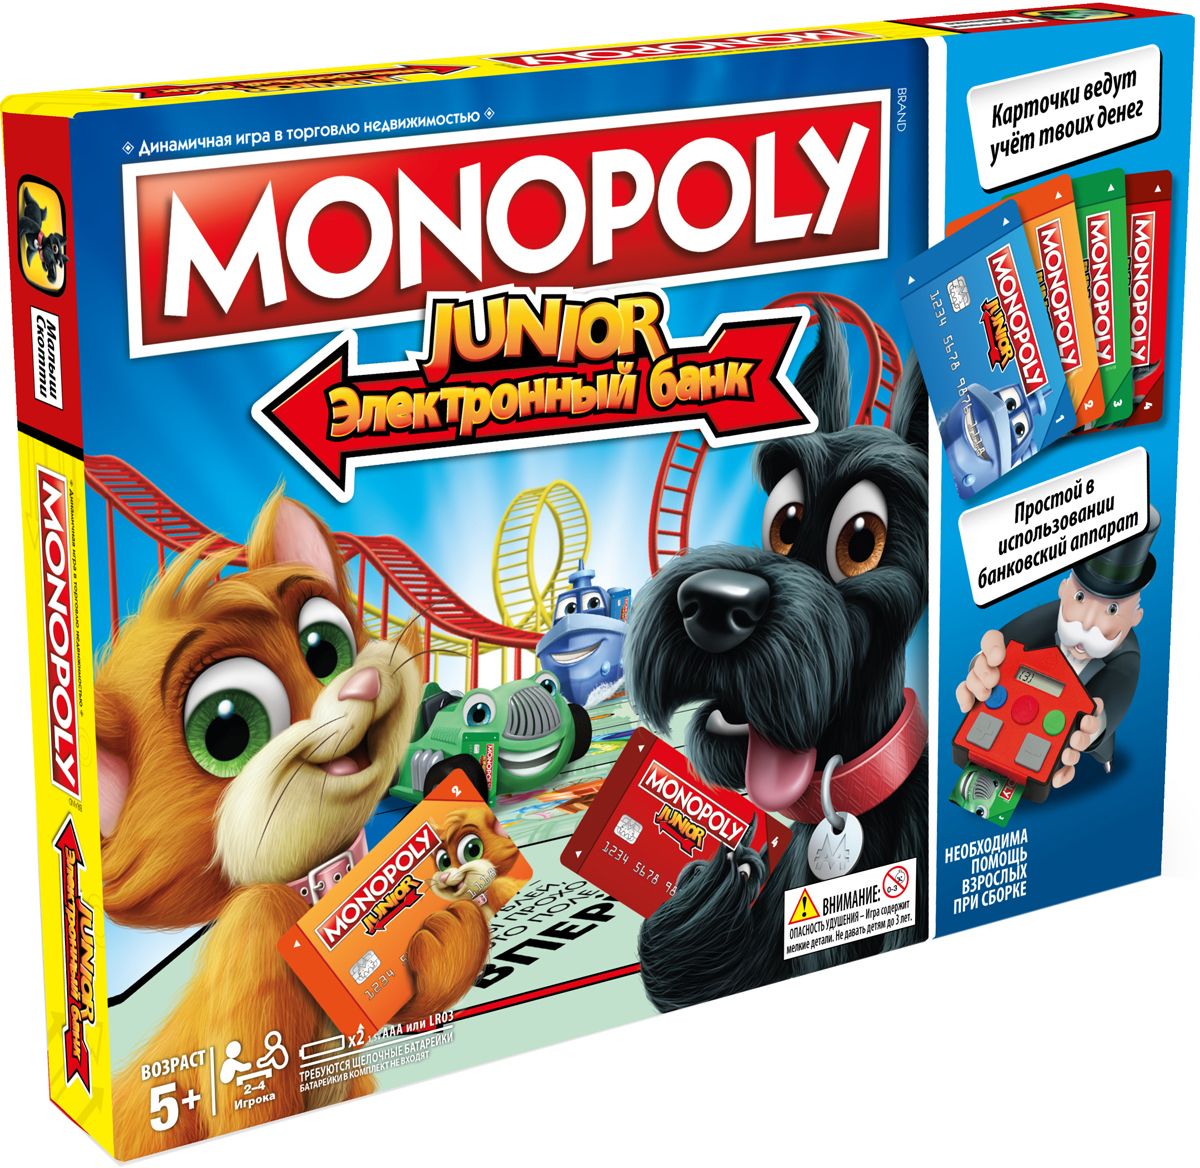 Monopoly      